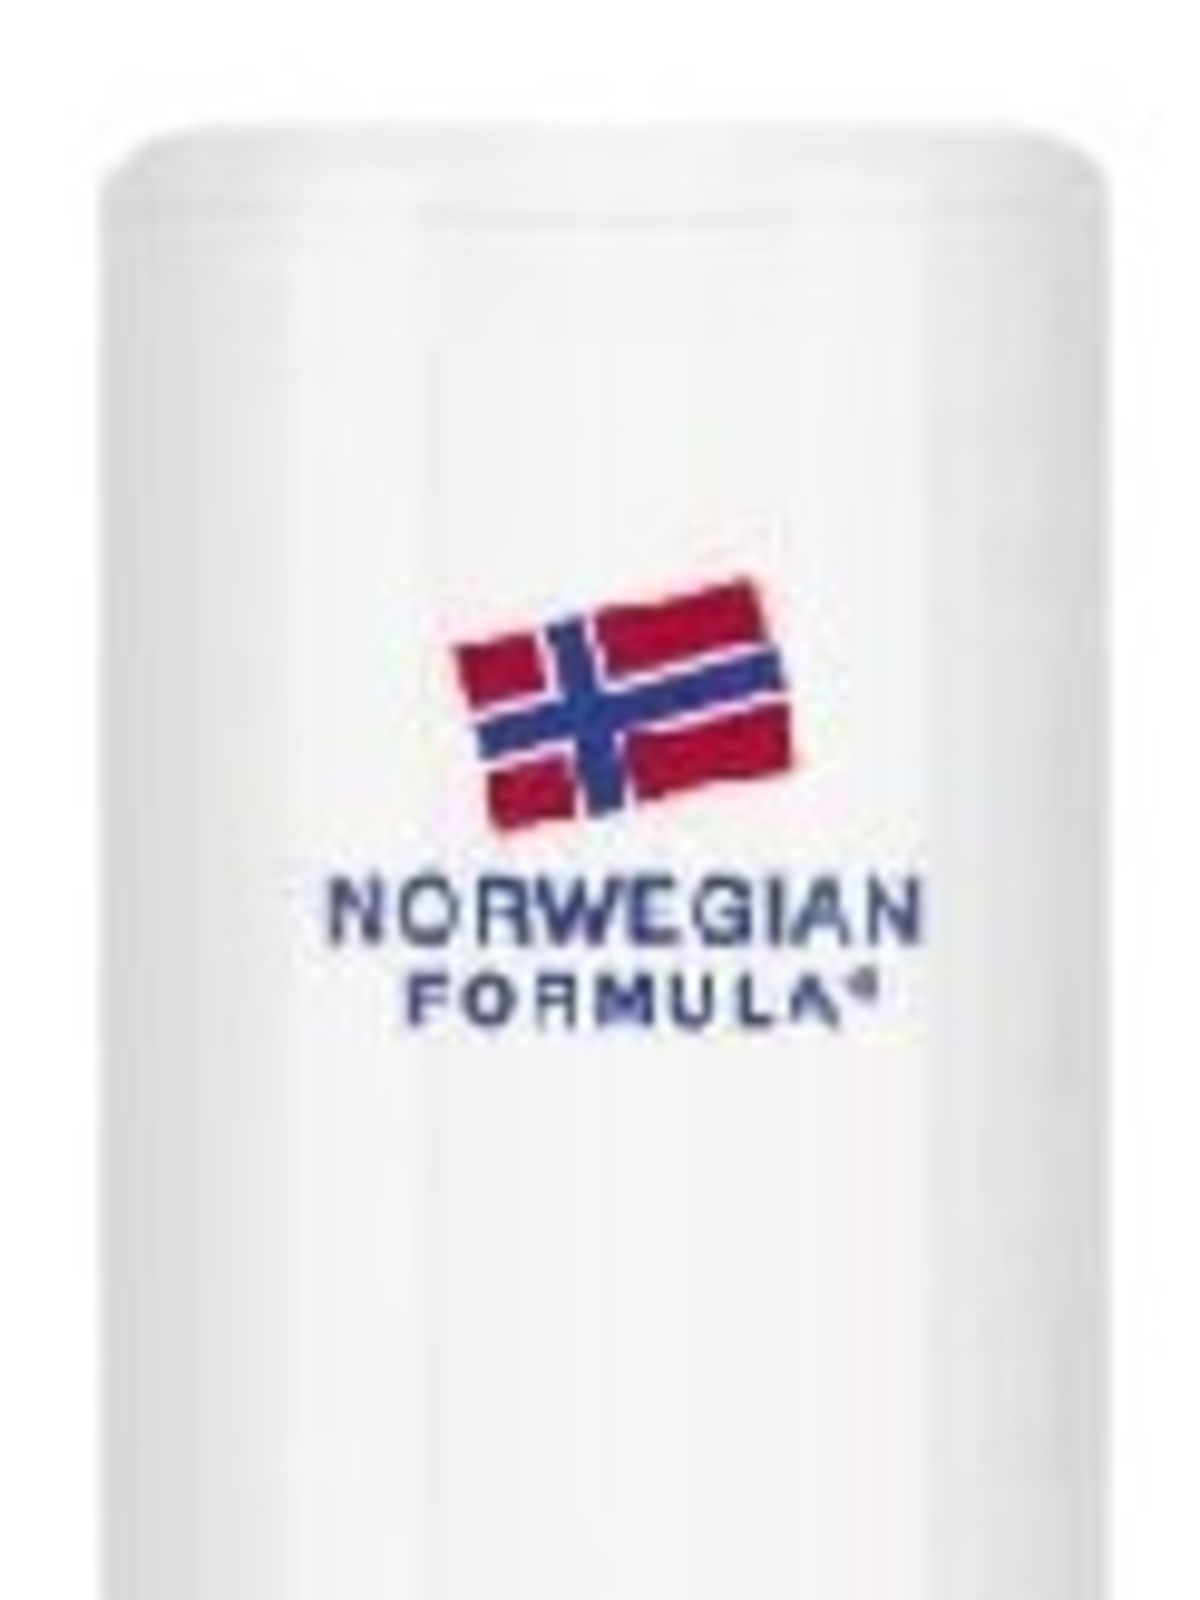 Neutrogena, Formuła Norweska, Odżywczy sztyft do ust z maliną nordycką